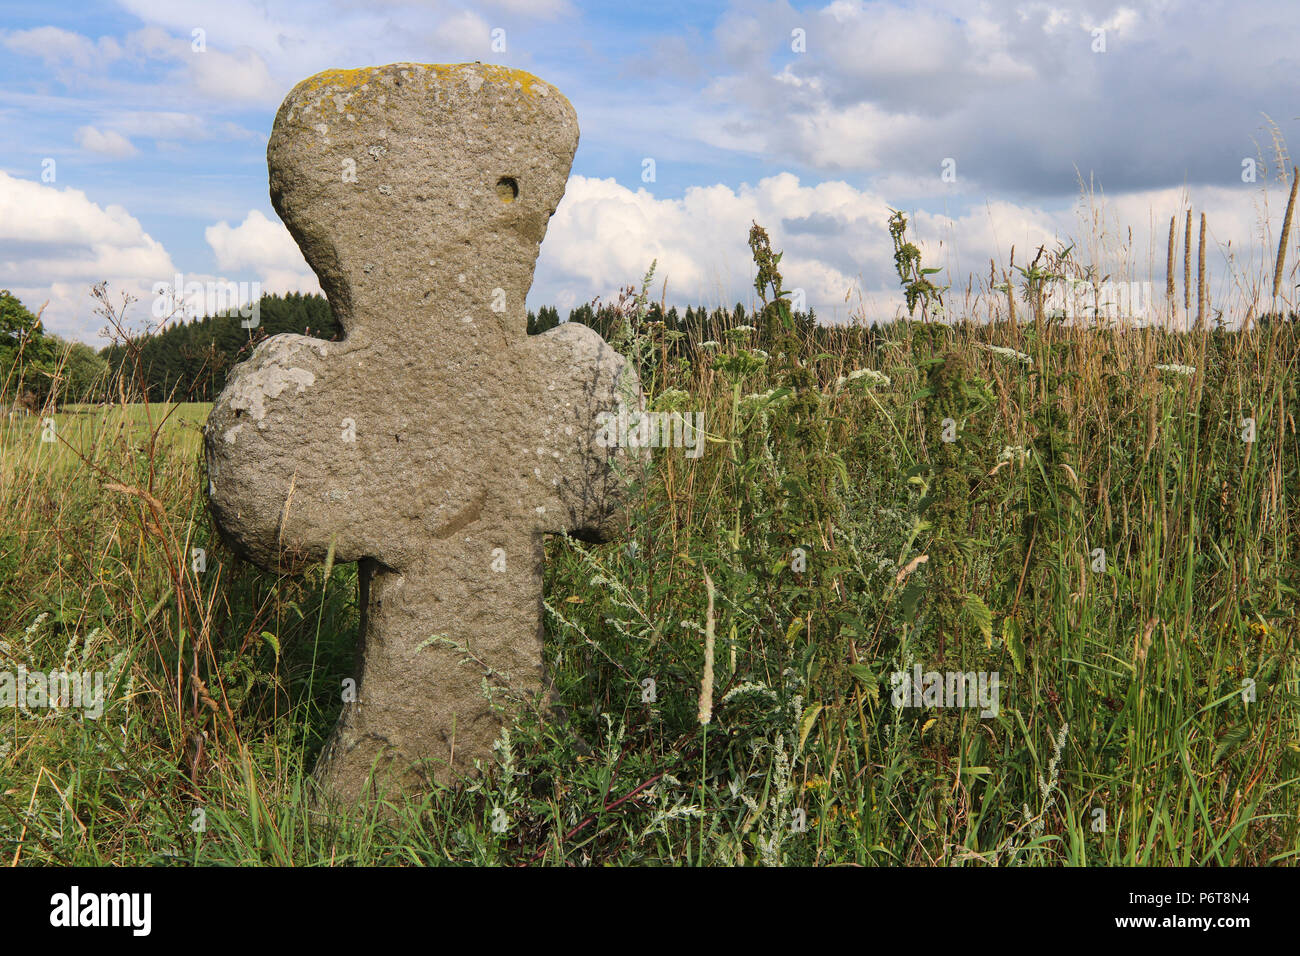 Croce di conciliazione - Croce di pietra costruita sul luogo dove divenne un crimine capitale o disastro, Ovesne Kladruby, Repubblica Ceca Foto Stock